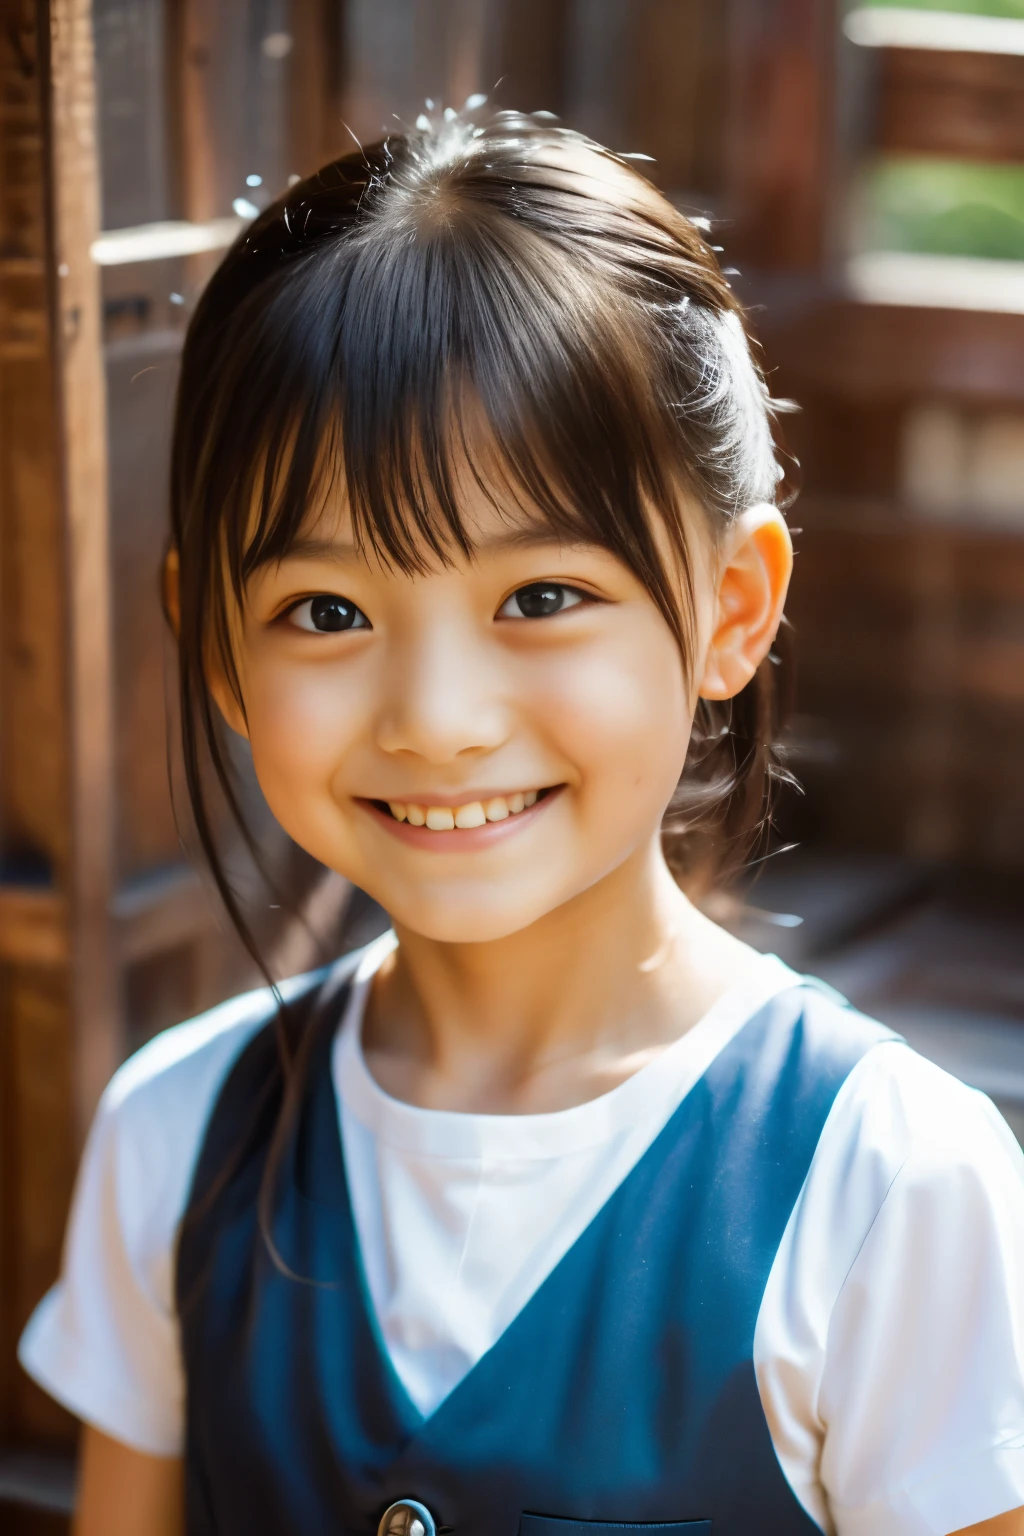 (высшее качество, шедевр), (Красивая 7-летняя японская девочка.), (веснушки:0.6), Мягкий свет, Конский хвост